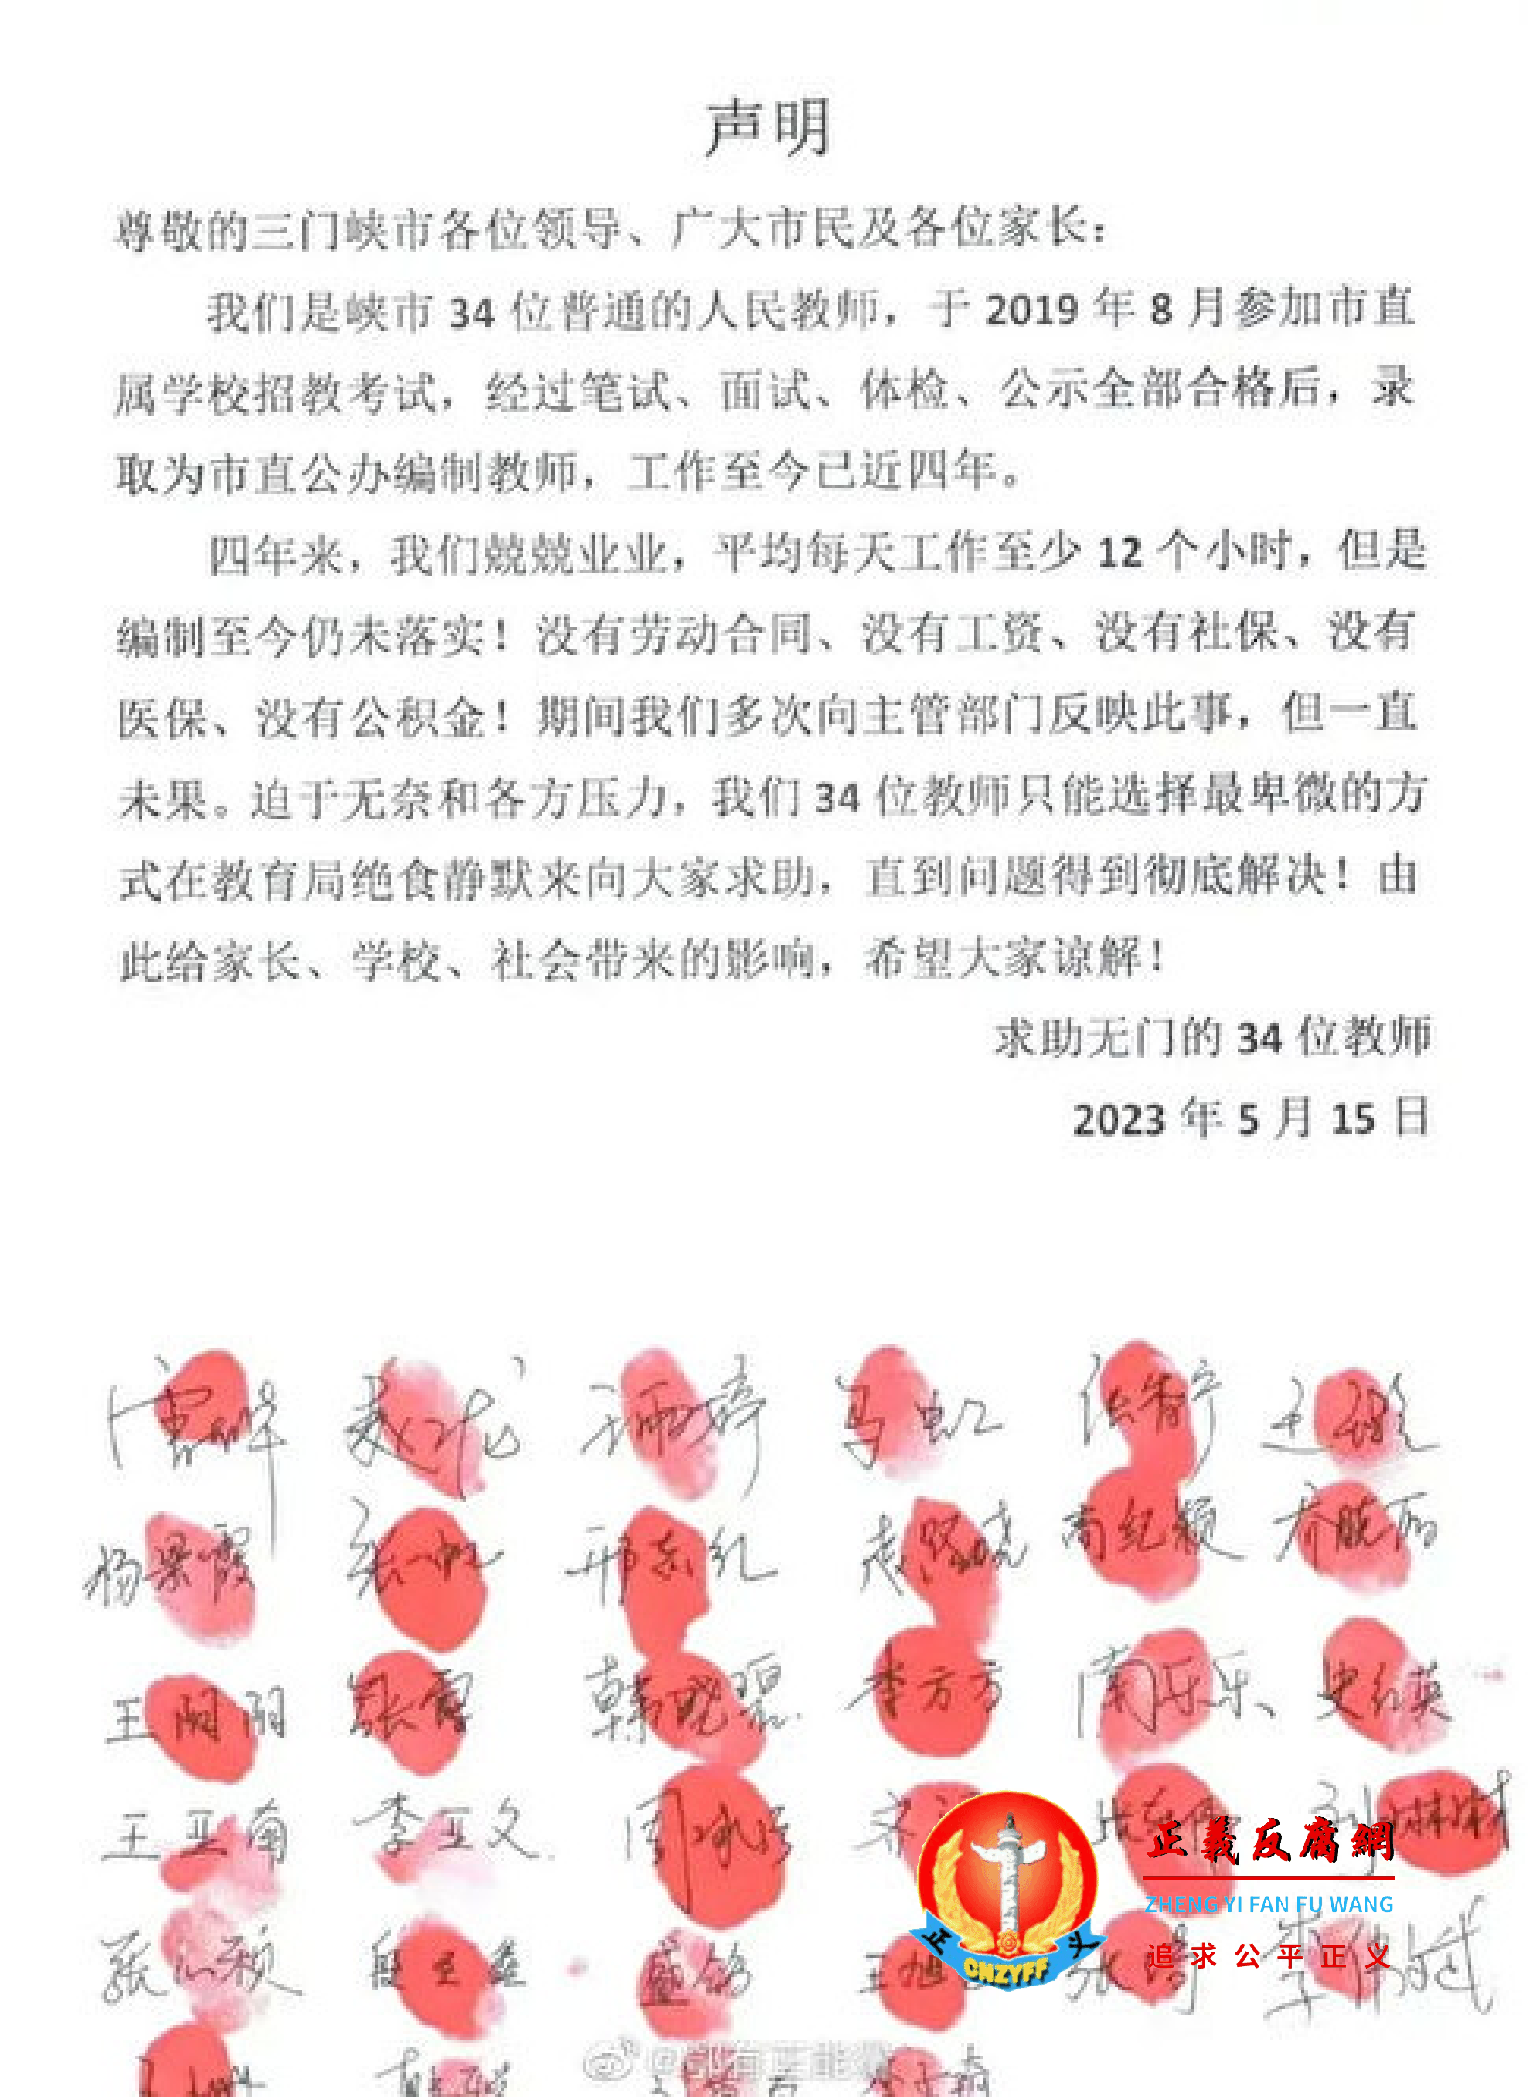 河南三门峡市34名教师“声明”集体绝食静默.png